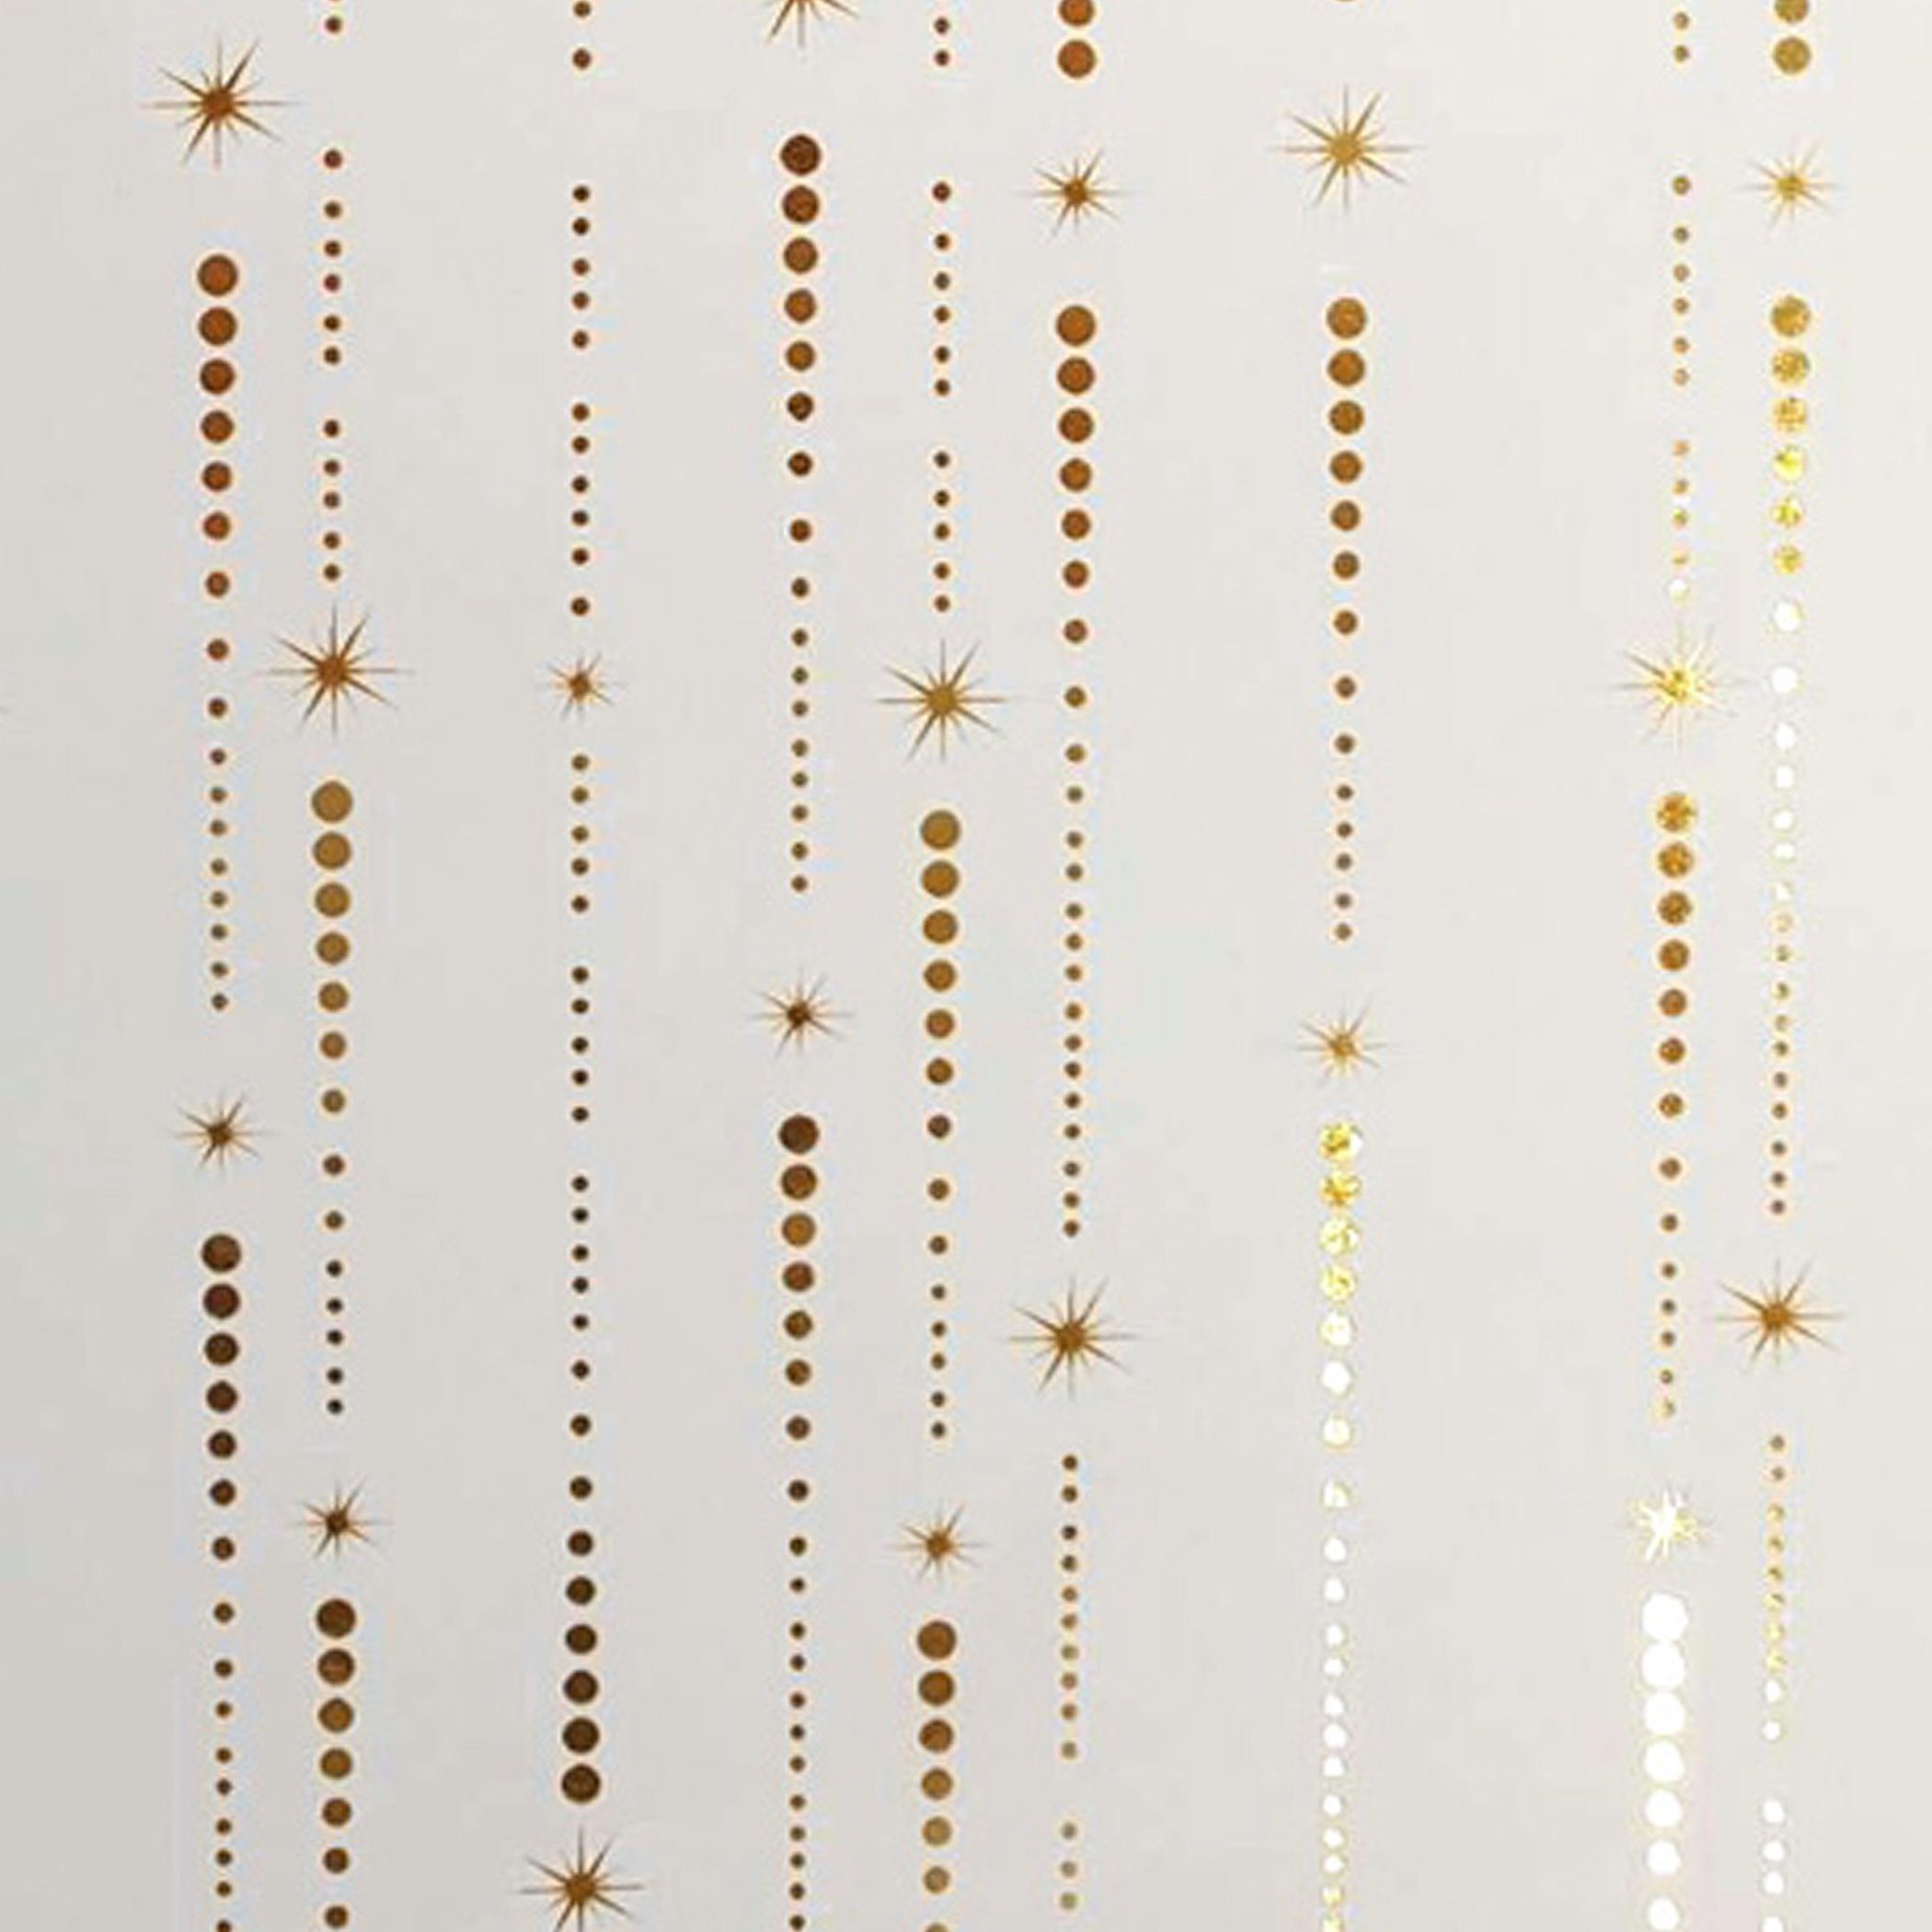 Star Geschenkpapier, Muster / 2m x weiß gold Rolle Geschenkpapier Sternschnuppen 70cm